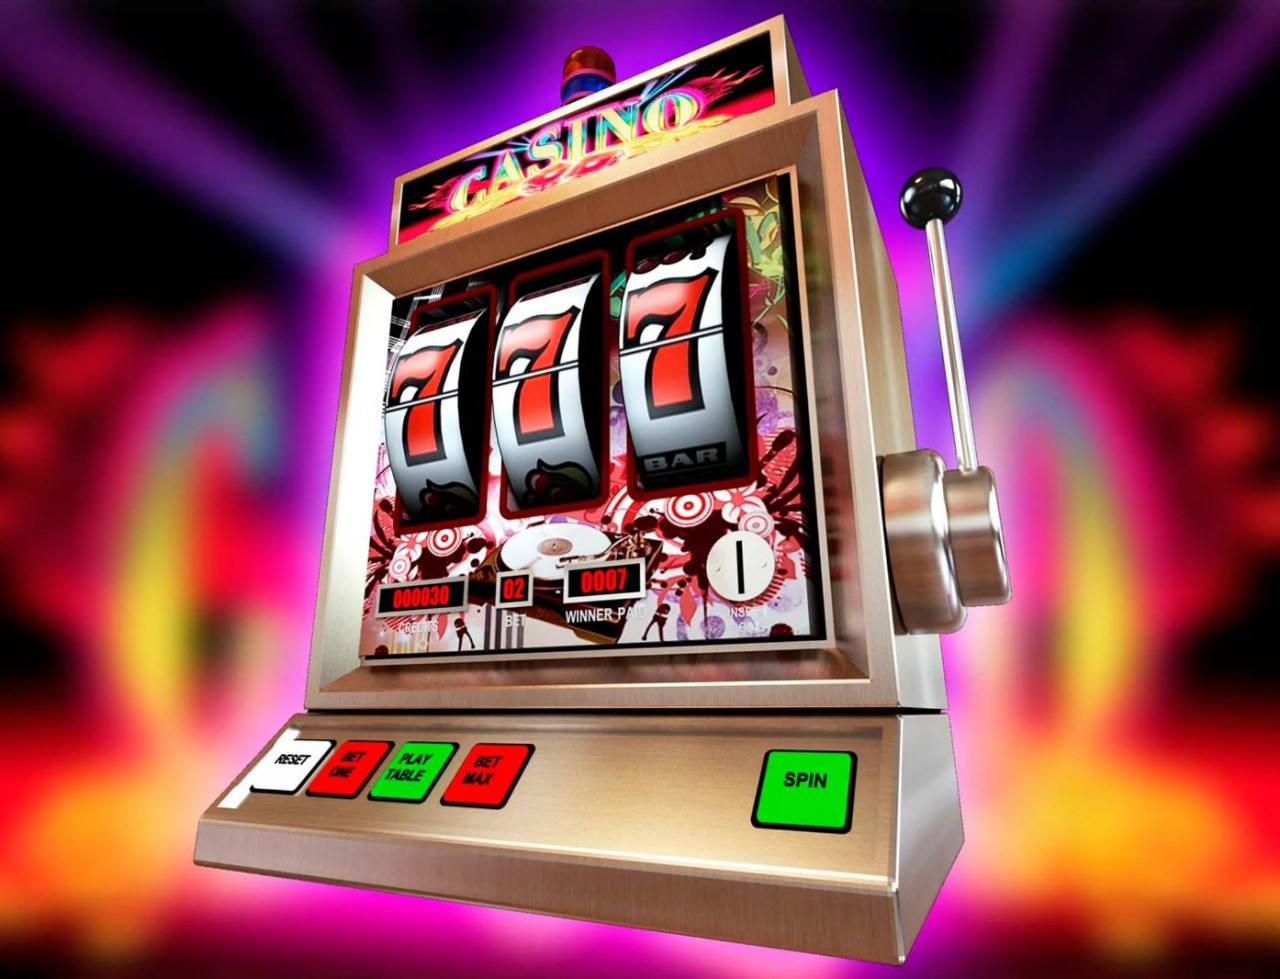 Caça-níquel - corrida de cavalos slot livre jogo da máquina